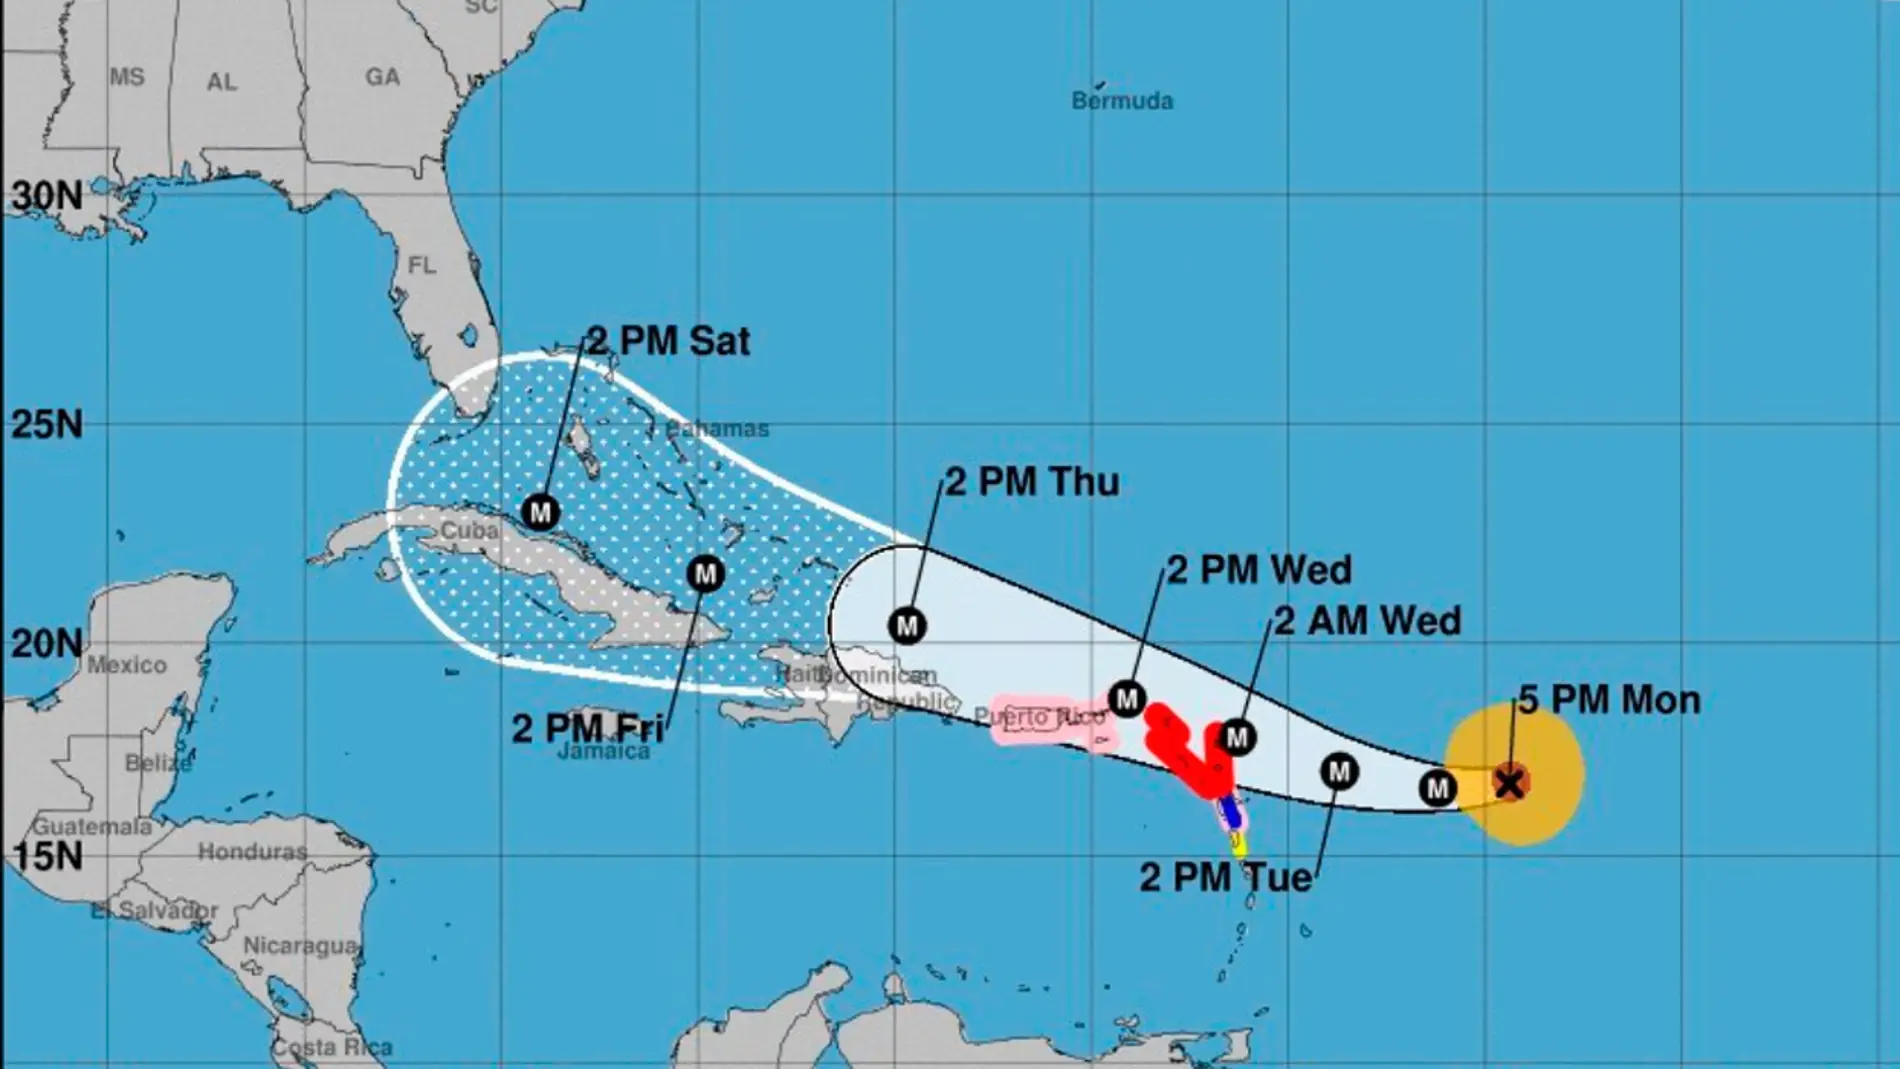 Pronóstico de 5 días sobre el posible desarrollo y trayectoria del huracán Irma